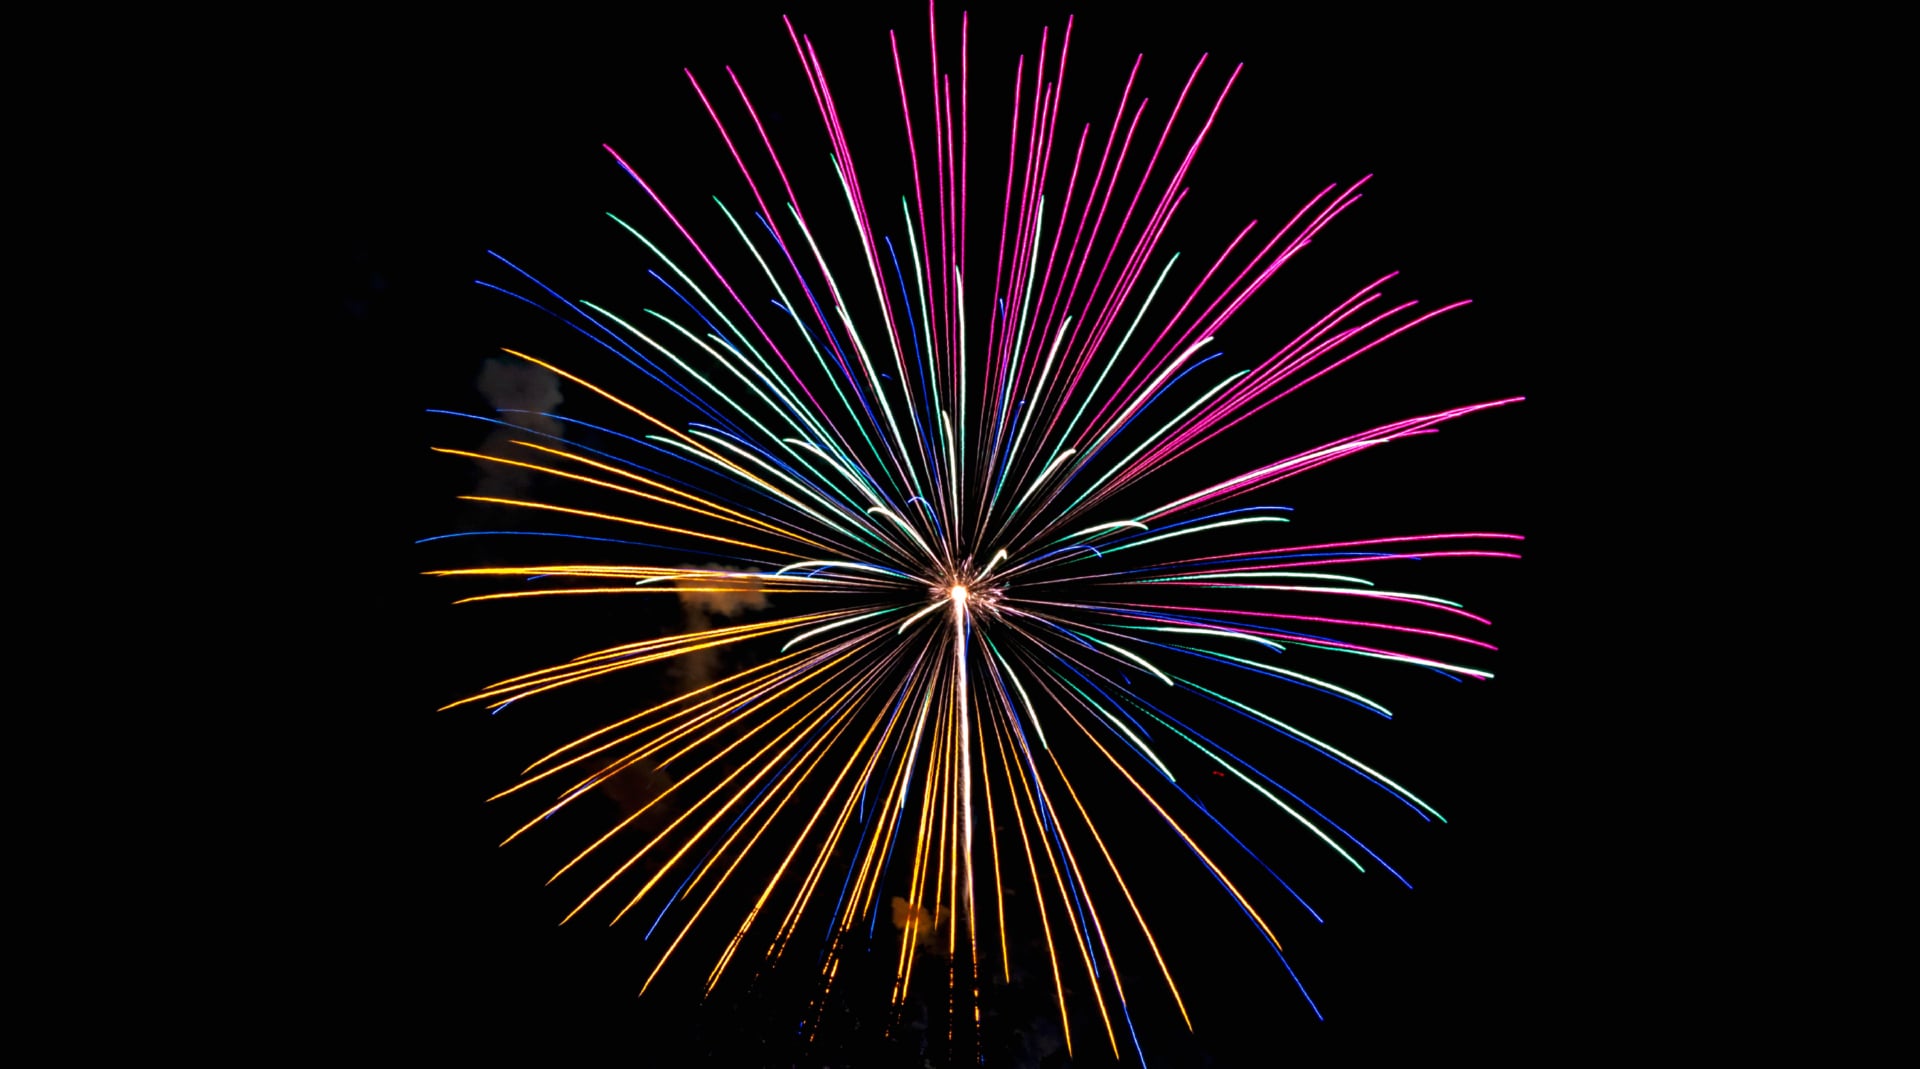 Digital Art Fireworks at 1024 x 1024 iPad size wallpapers HD quality